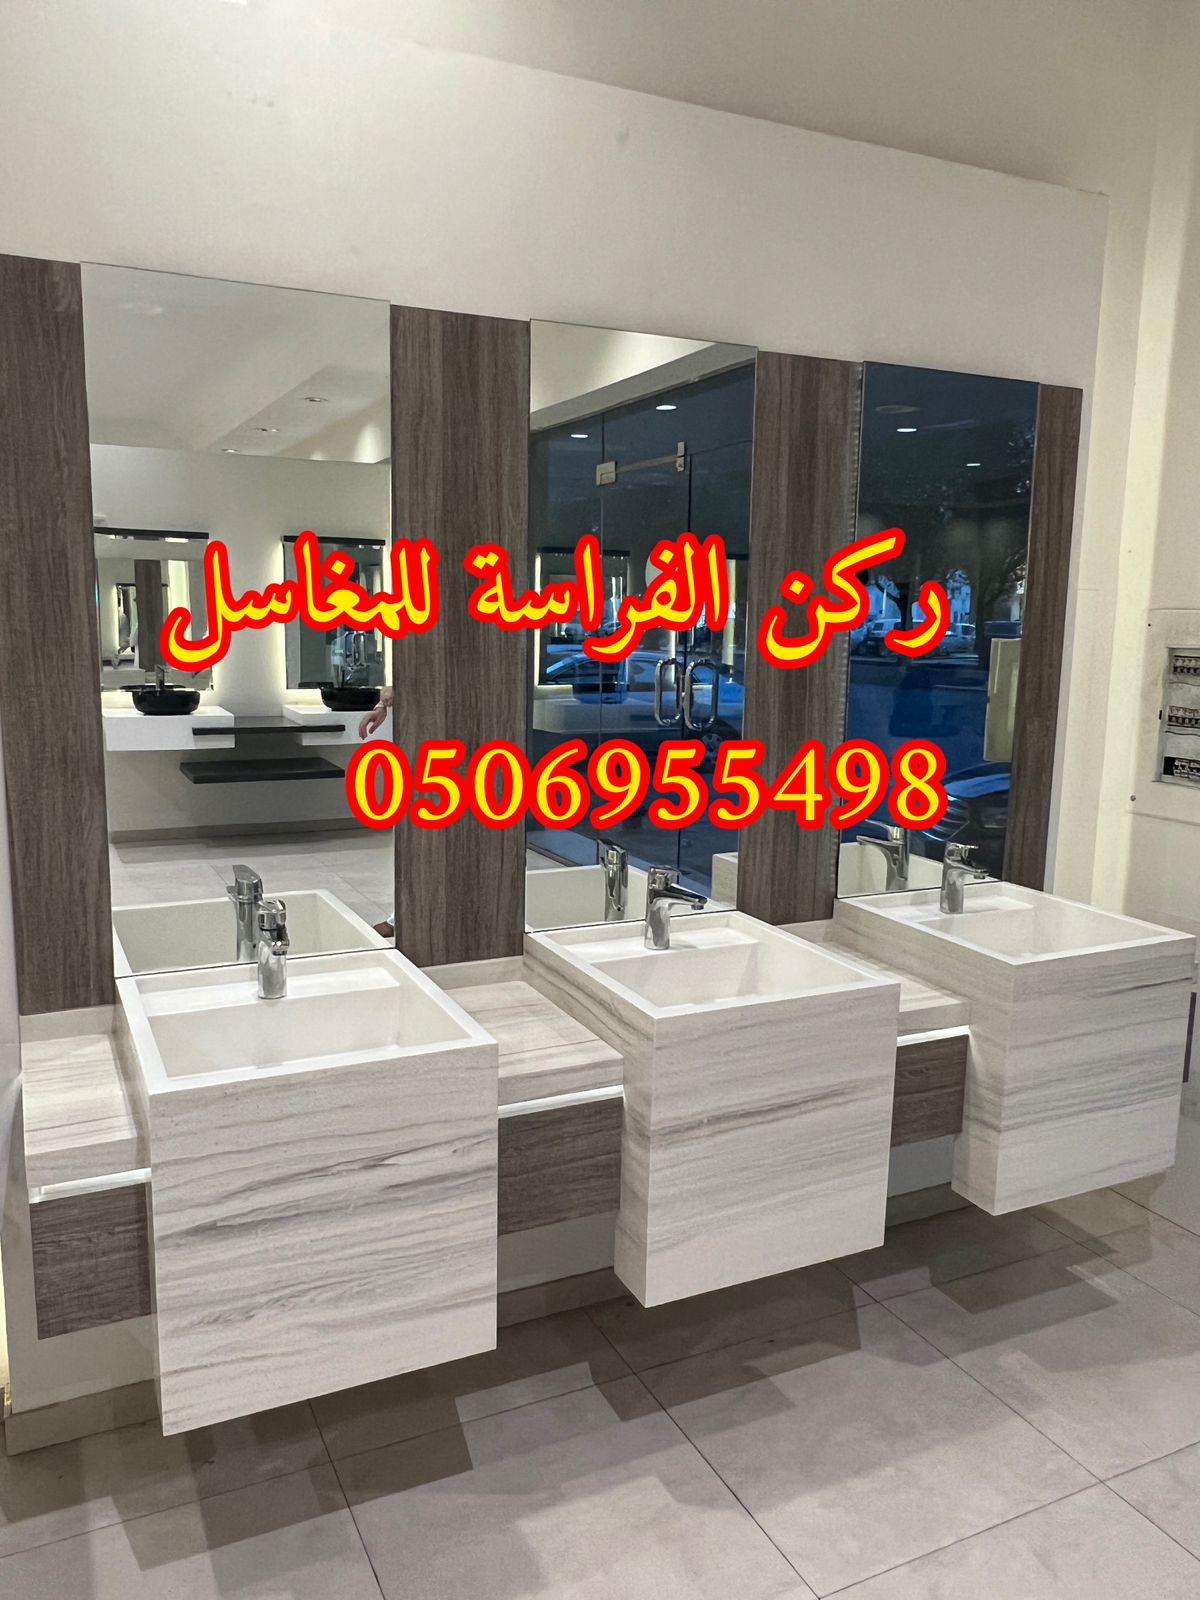 الرياض - ديكورات مغاسل حمامات رخام في الرياض,0506955498 854390340